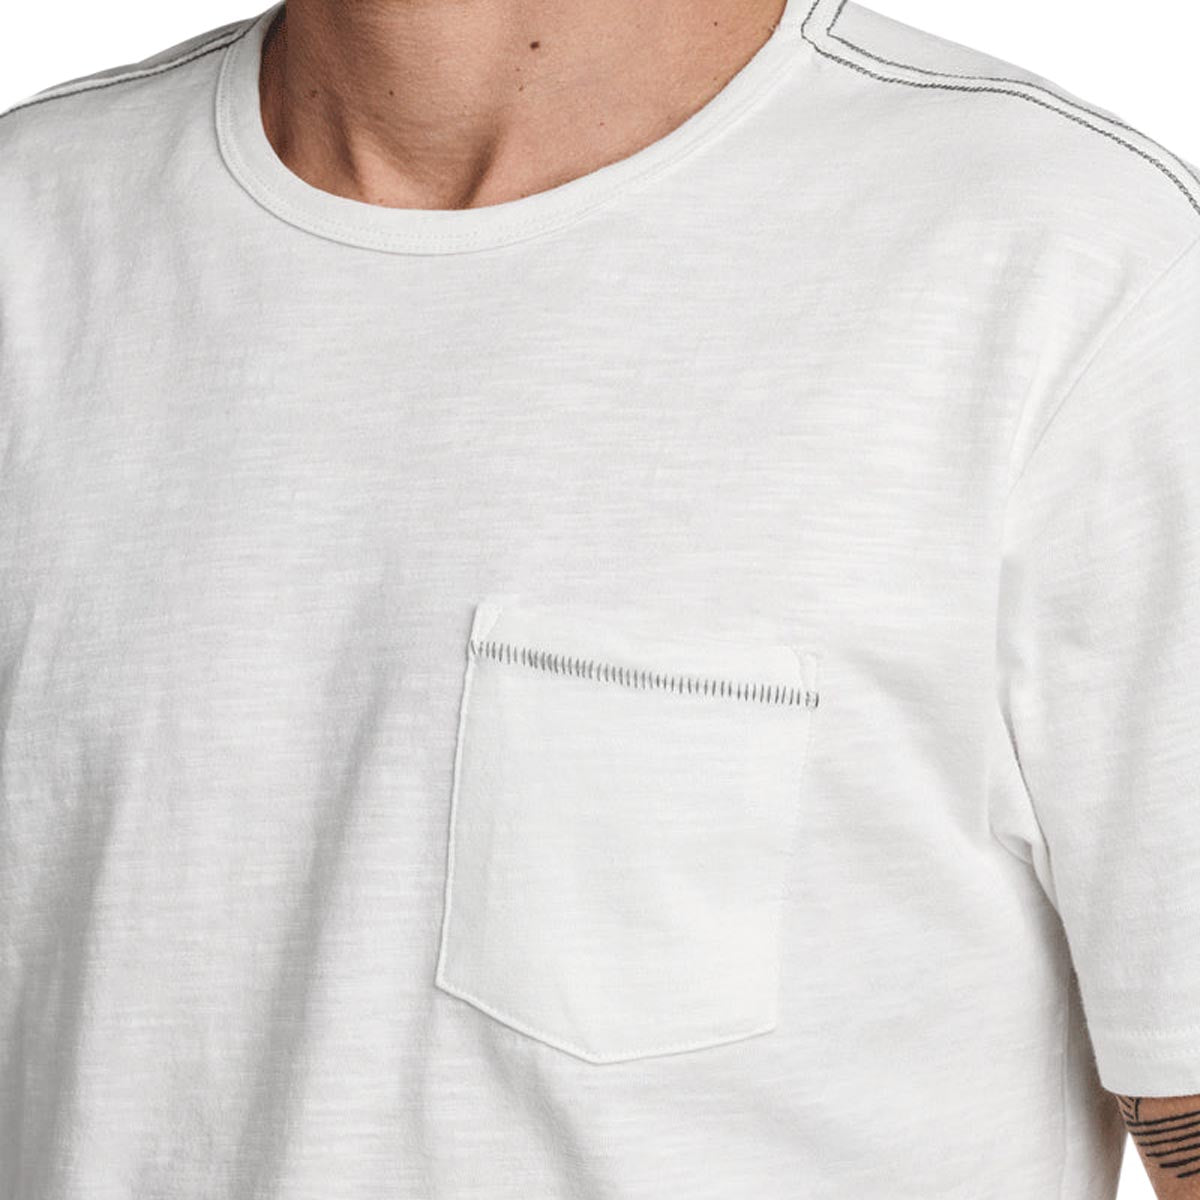 Roark Well Worn Midweight Organic Shirt - Off White image 3